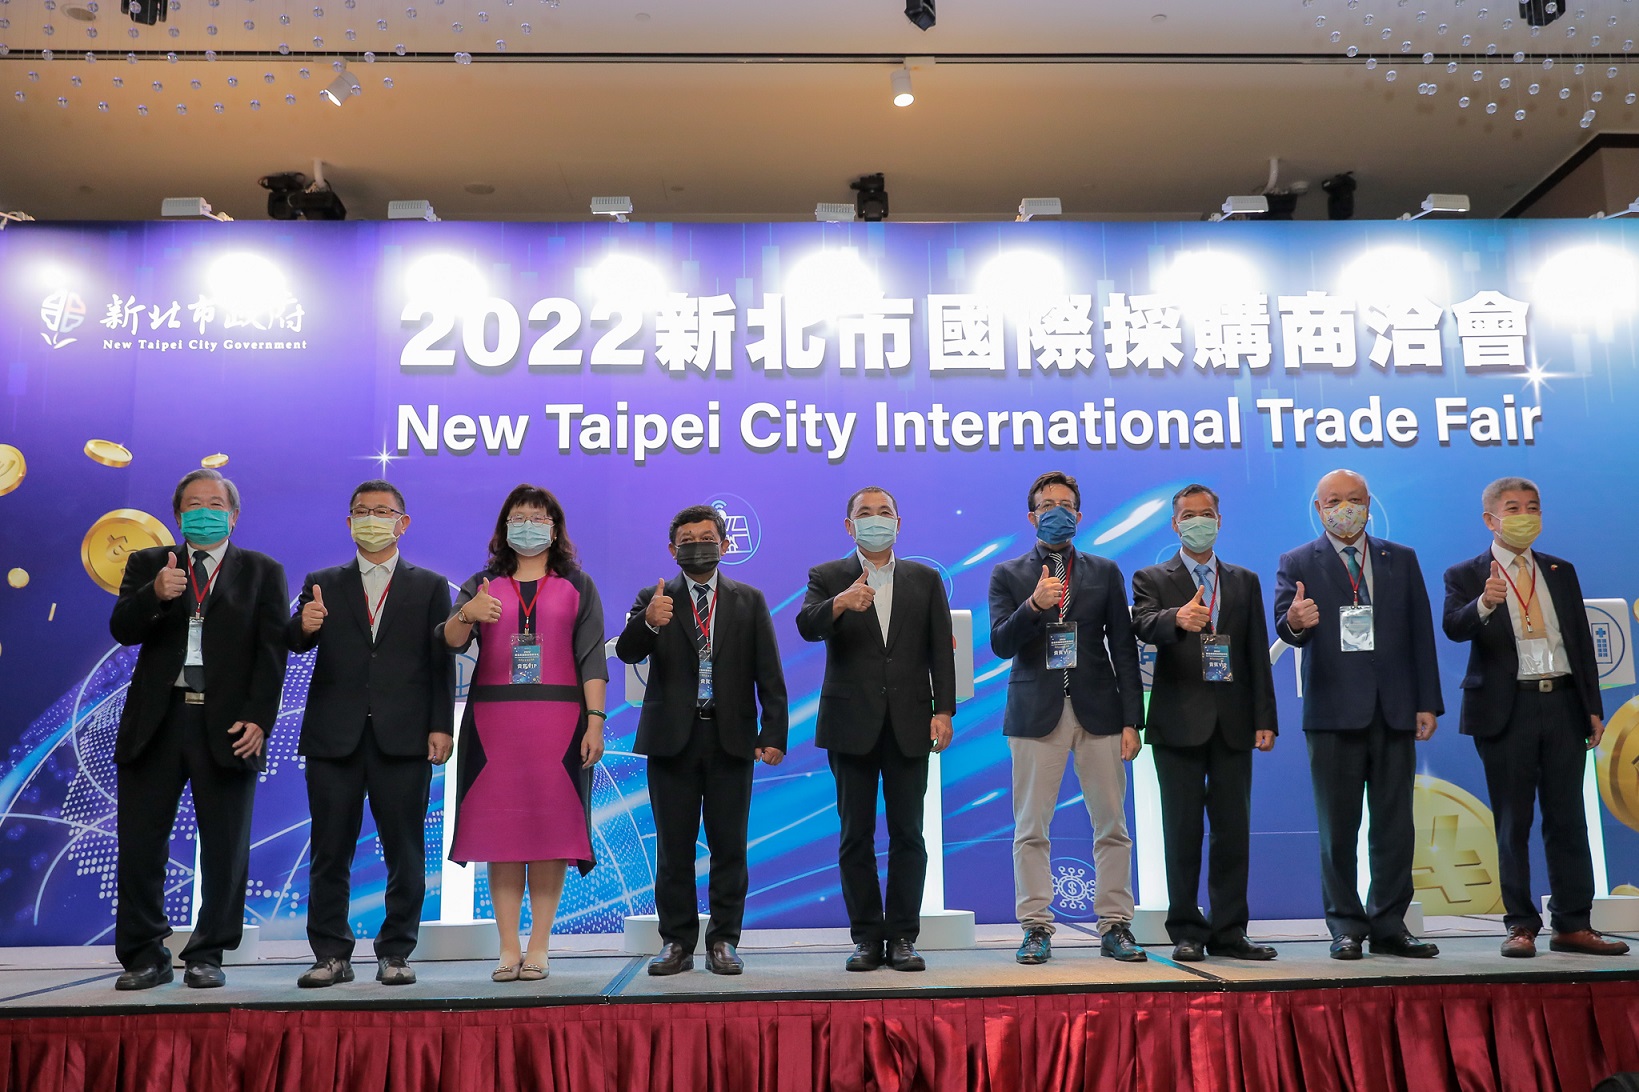 2022 New Taipei City International Trade Fair